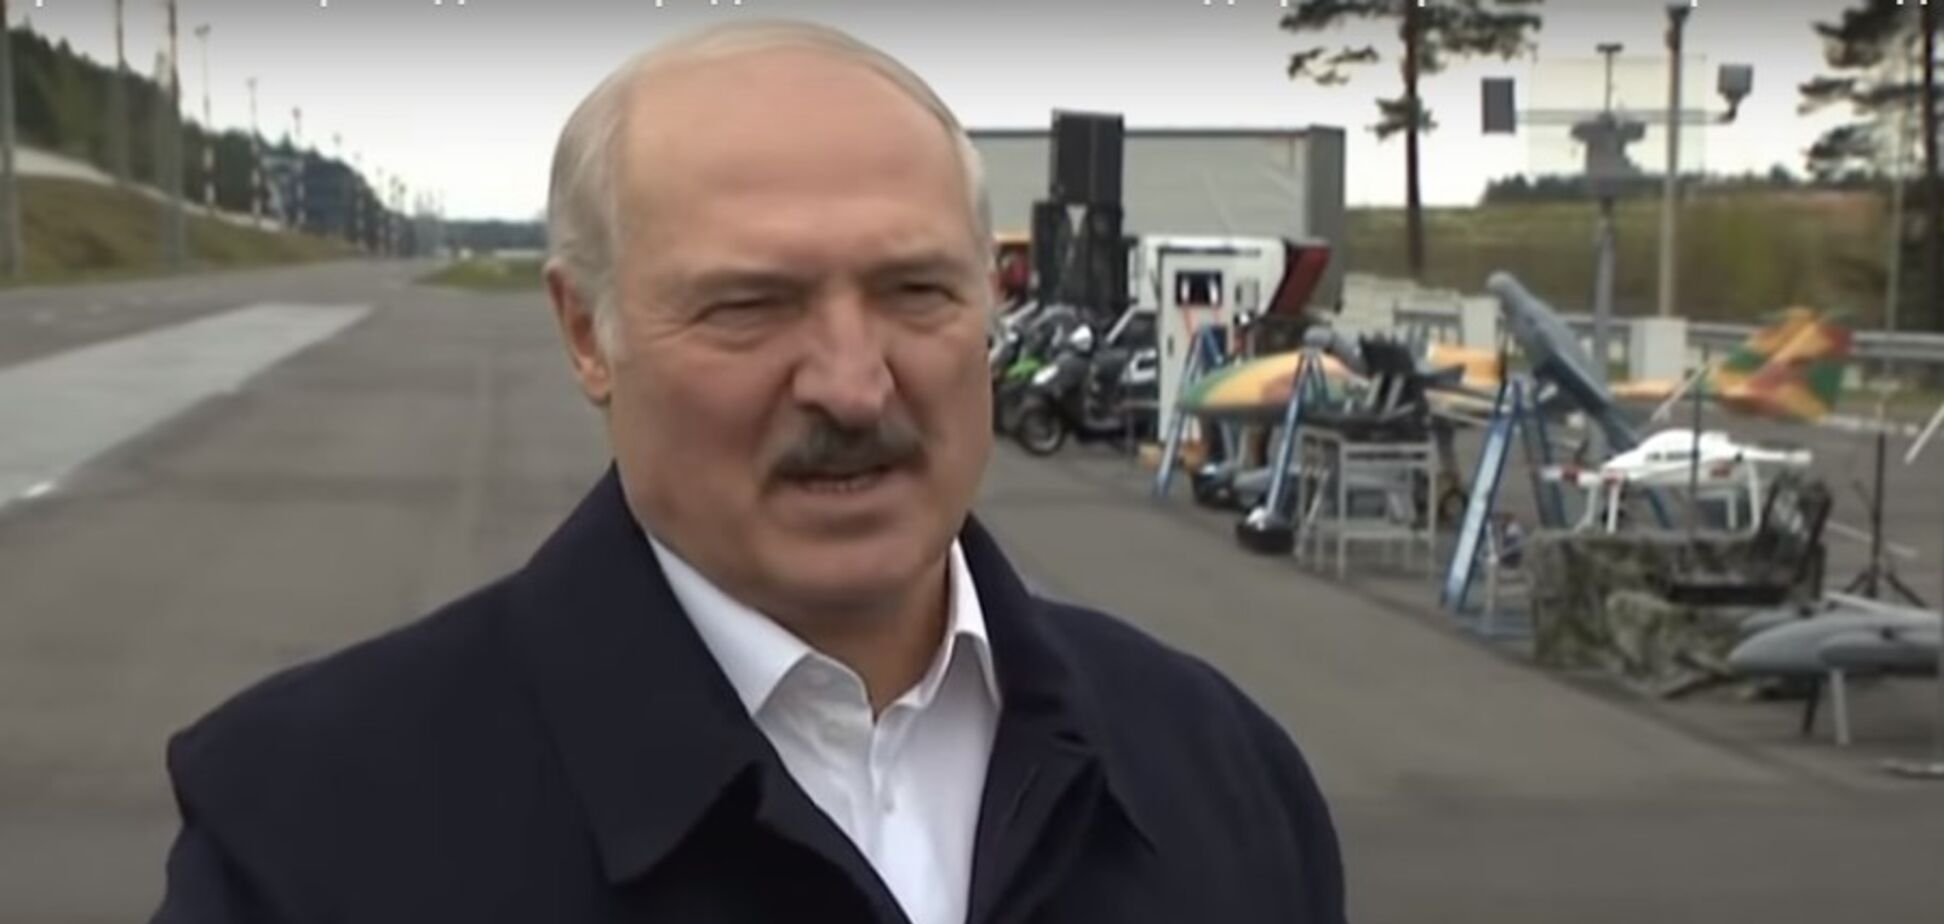 Лукашенко дав поради щодо сексу під час пандемії. Відео